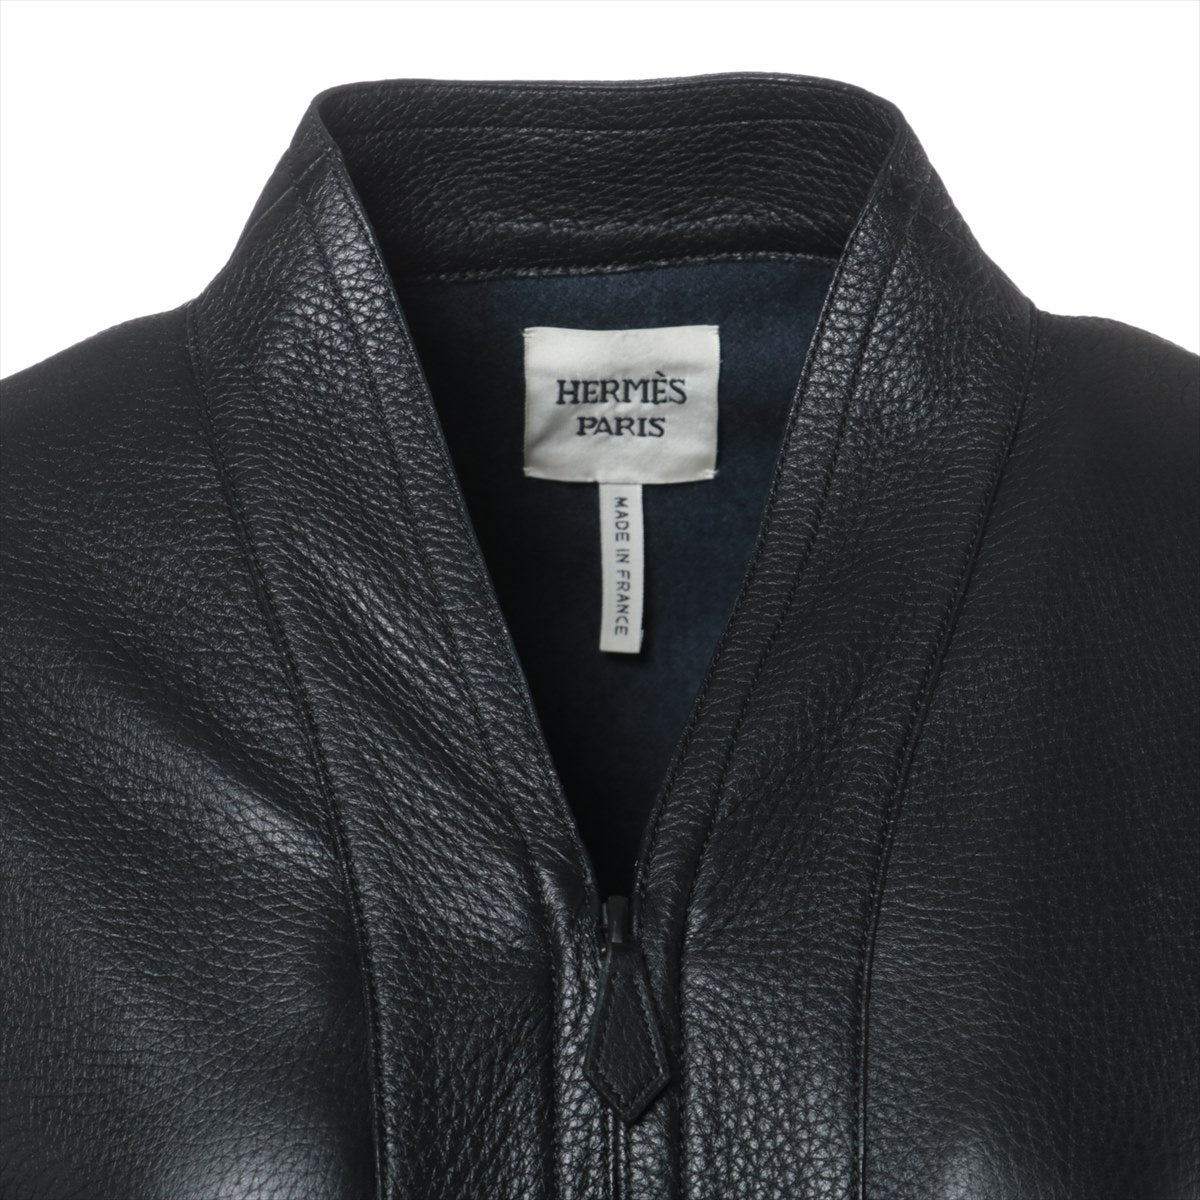 Hermès Deerskin Leather jacket 34 Ladies' Black